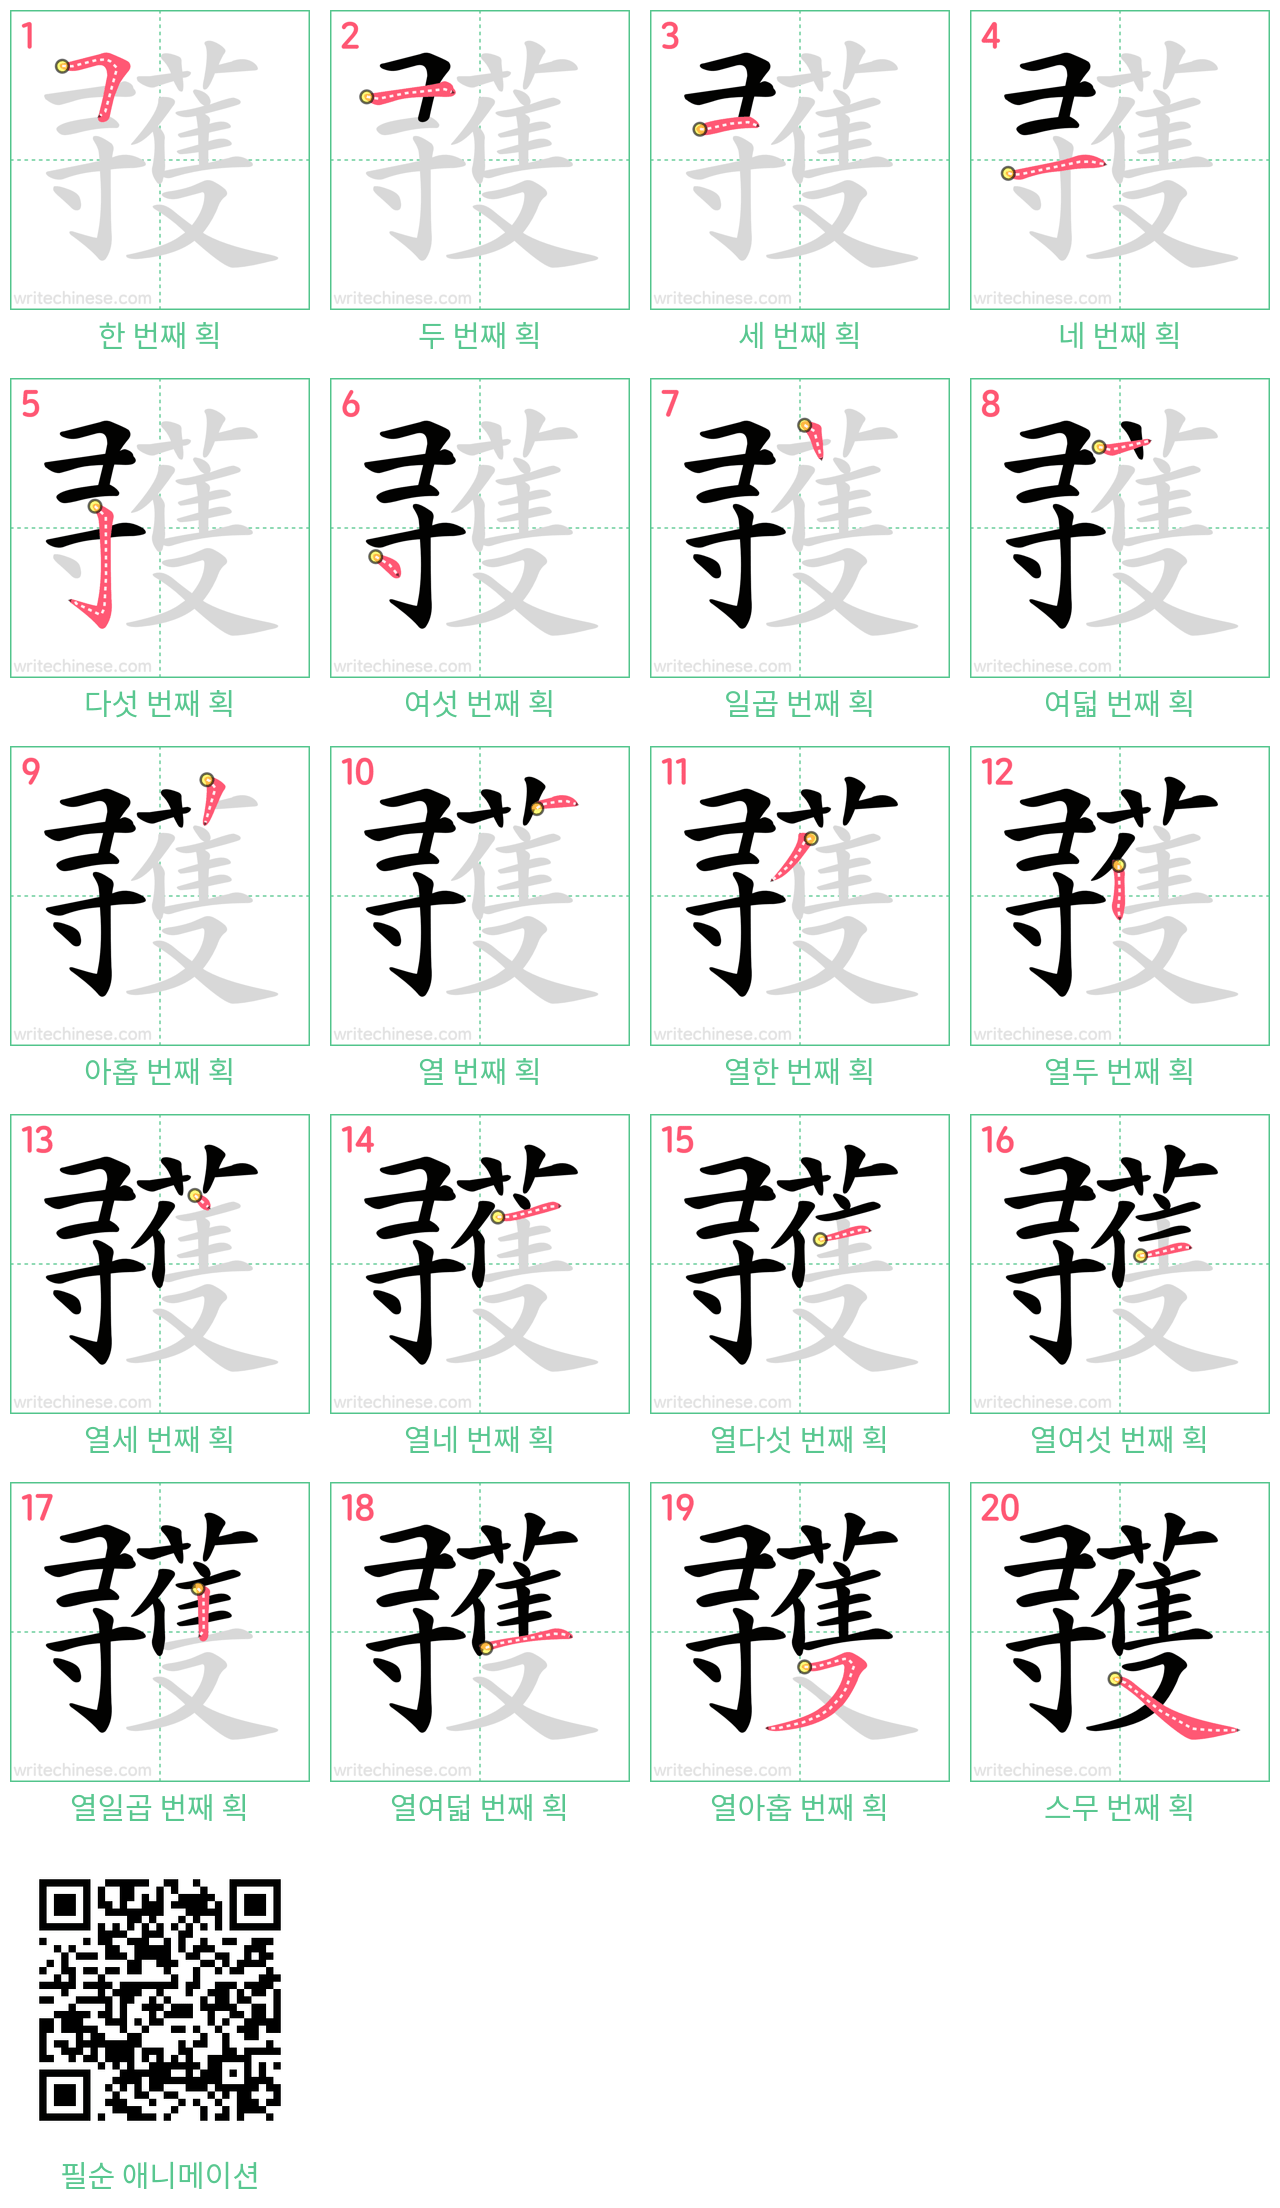 彟 step-by-step stroke order diagrams